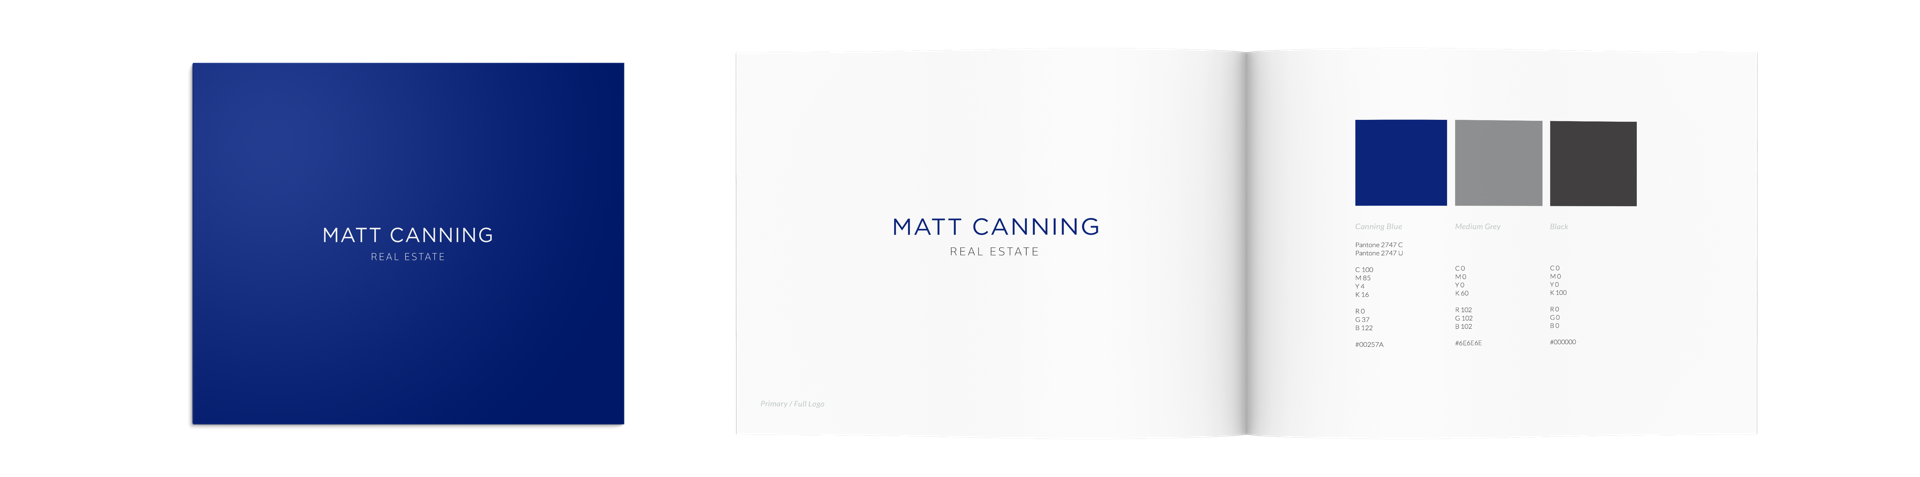 Real estate branding stationary design for Matt Canning, Fraser Valley